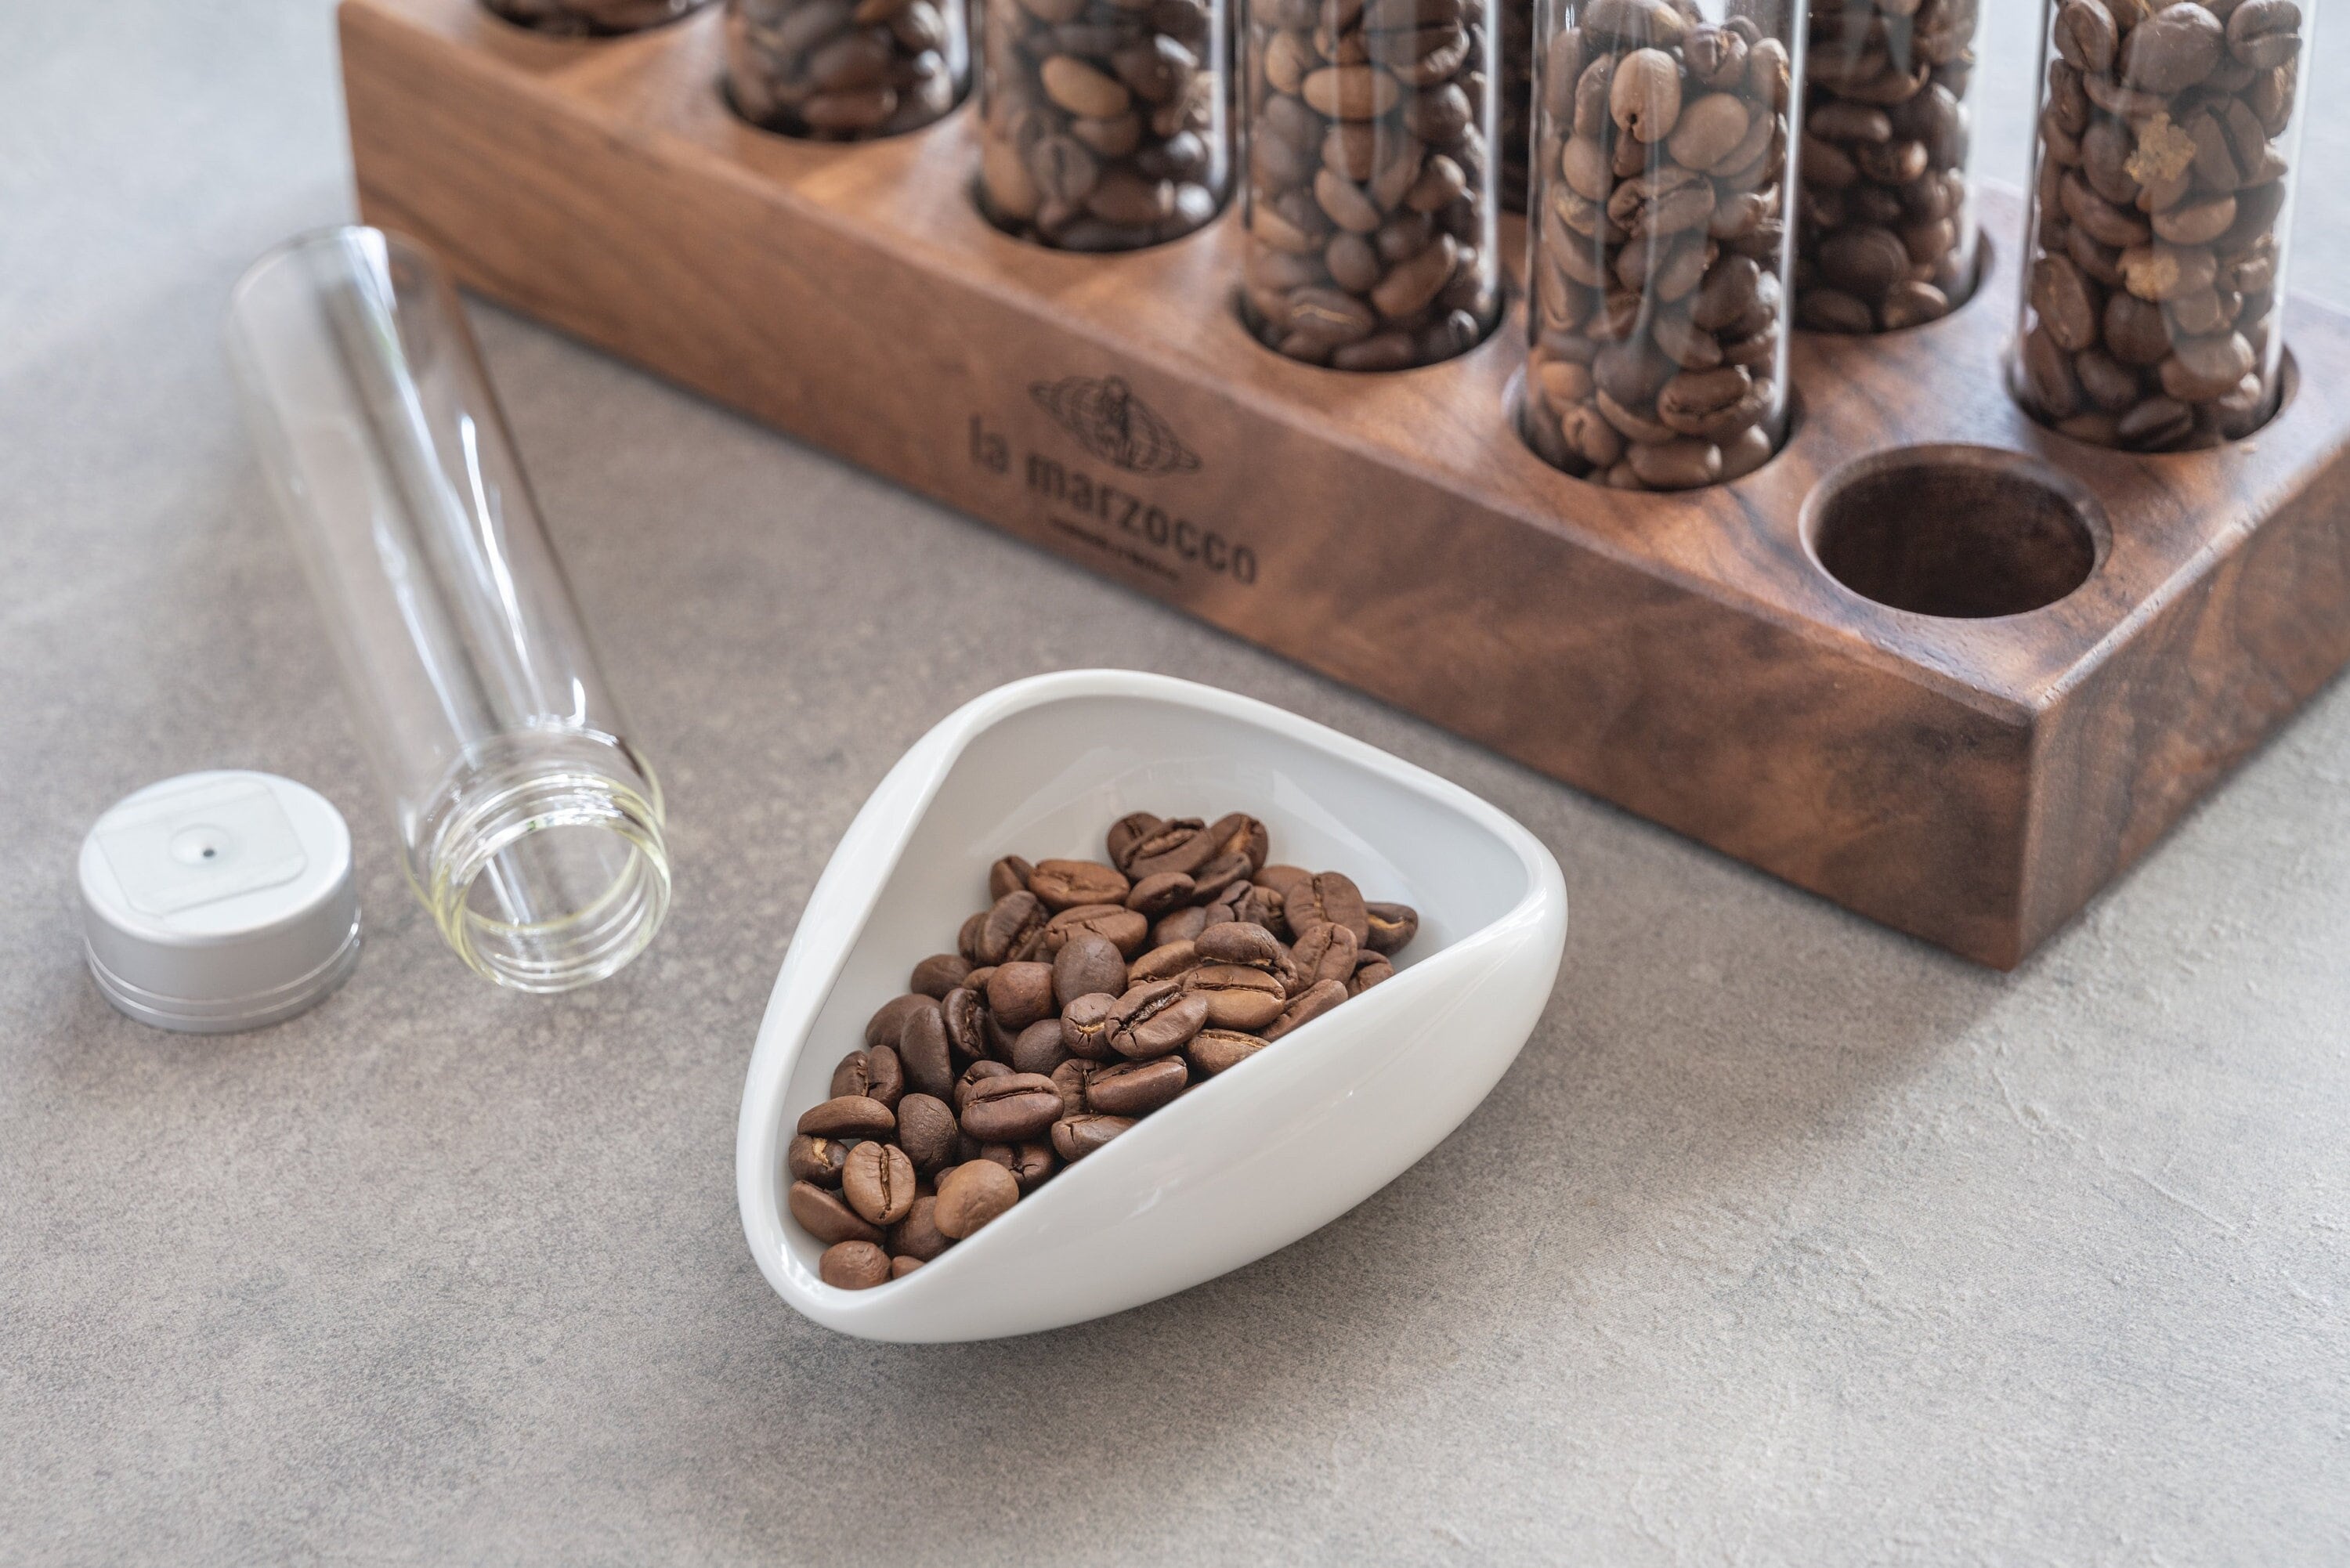 Bol doseur de grains de café pour mettre à léchelle vos grains de café  Plateau de dosage de café expresso /imprimé en 3D -  France